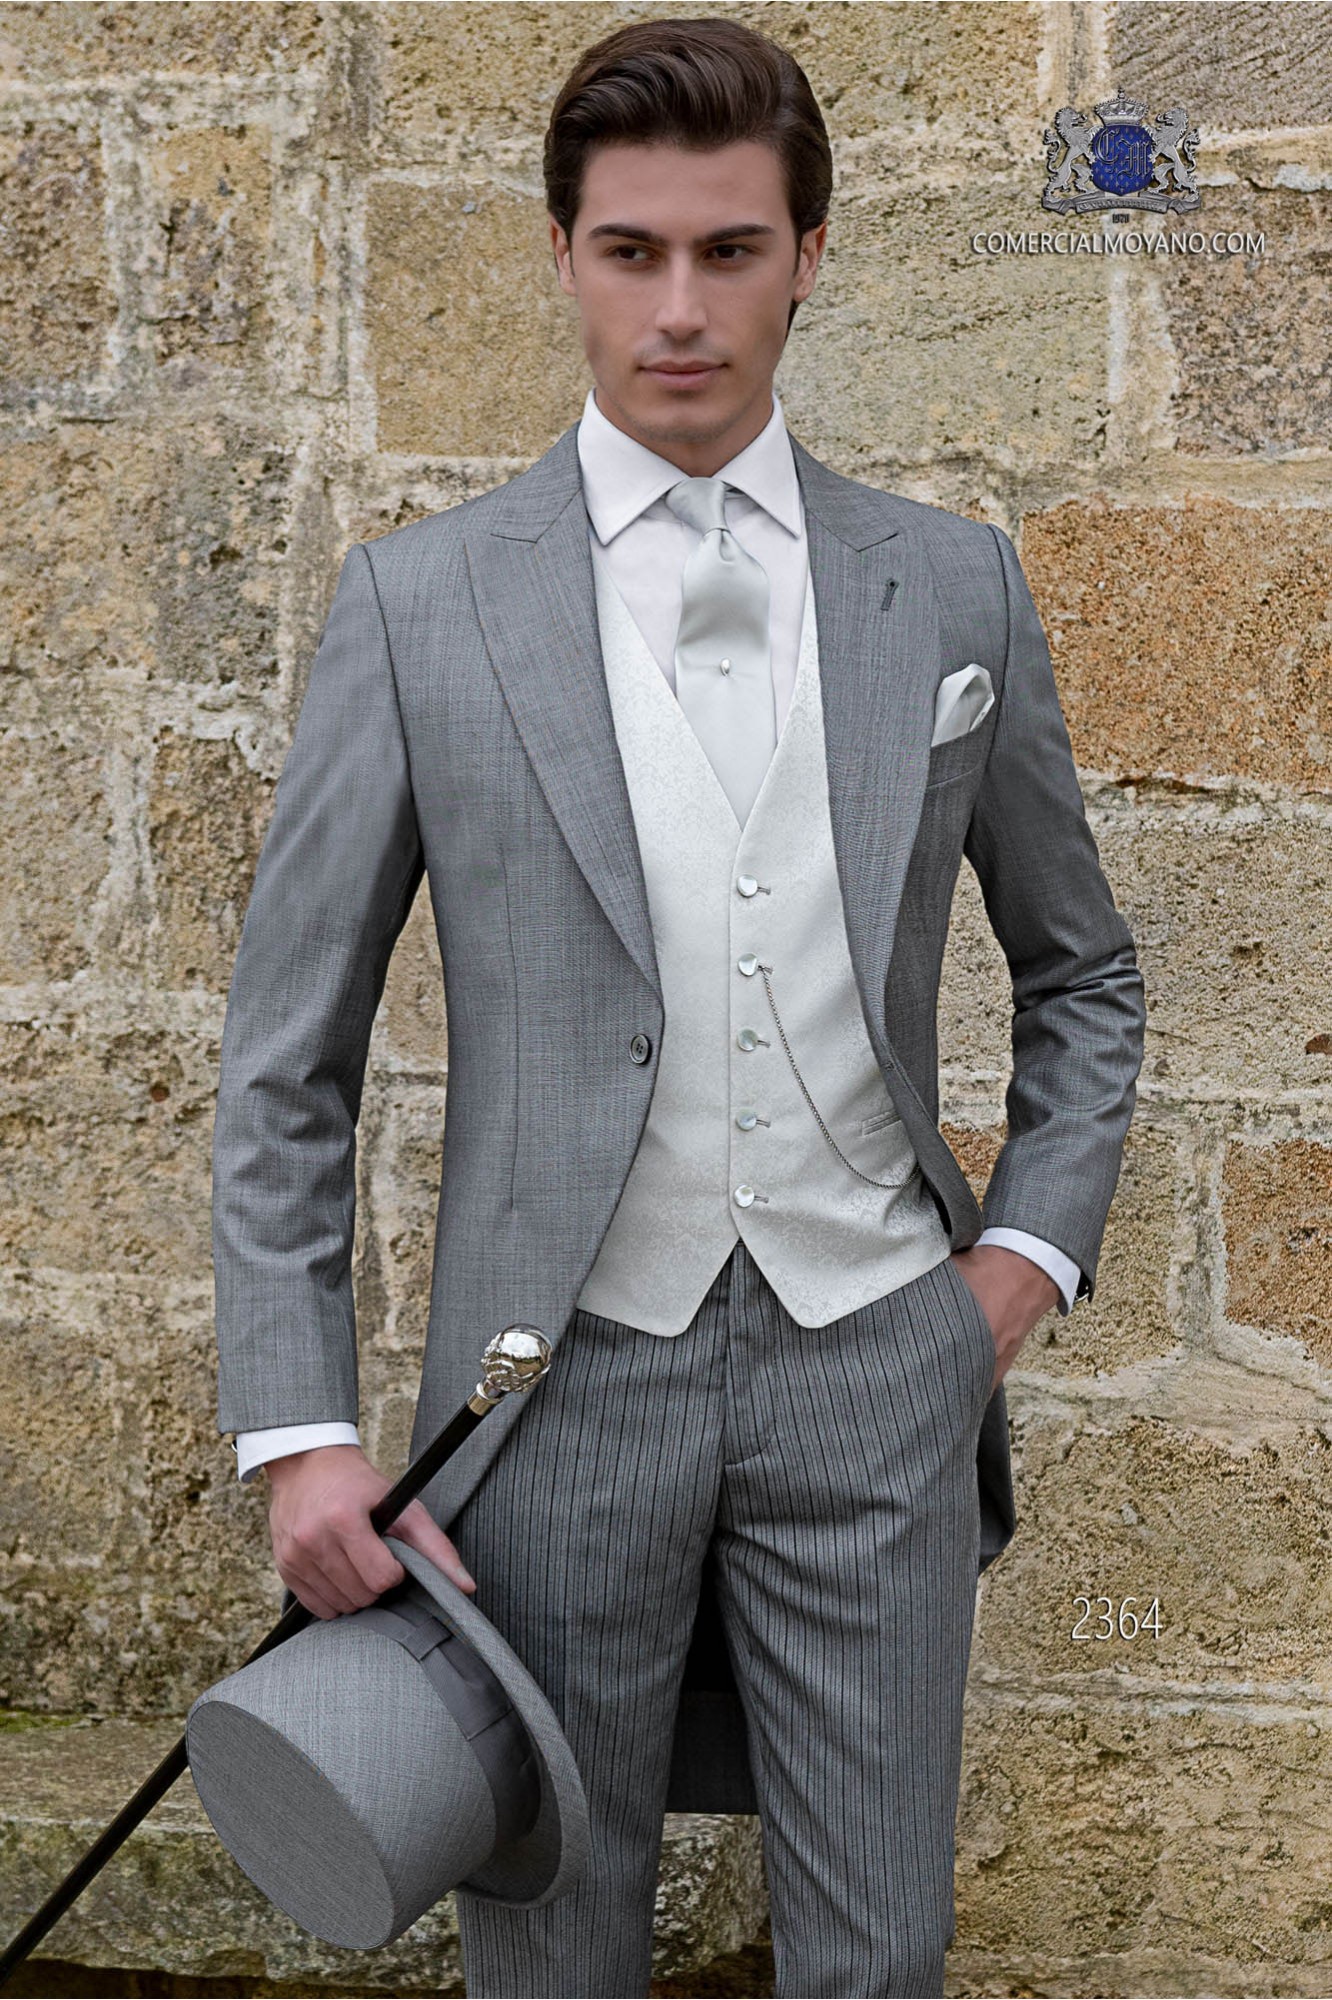 Chaqué gris claro a medida fil a fil mixto lana coordinado con pantalón de raya diplomática modelo: 2364 Mario Moyano colección Gentleman